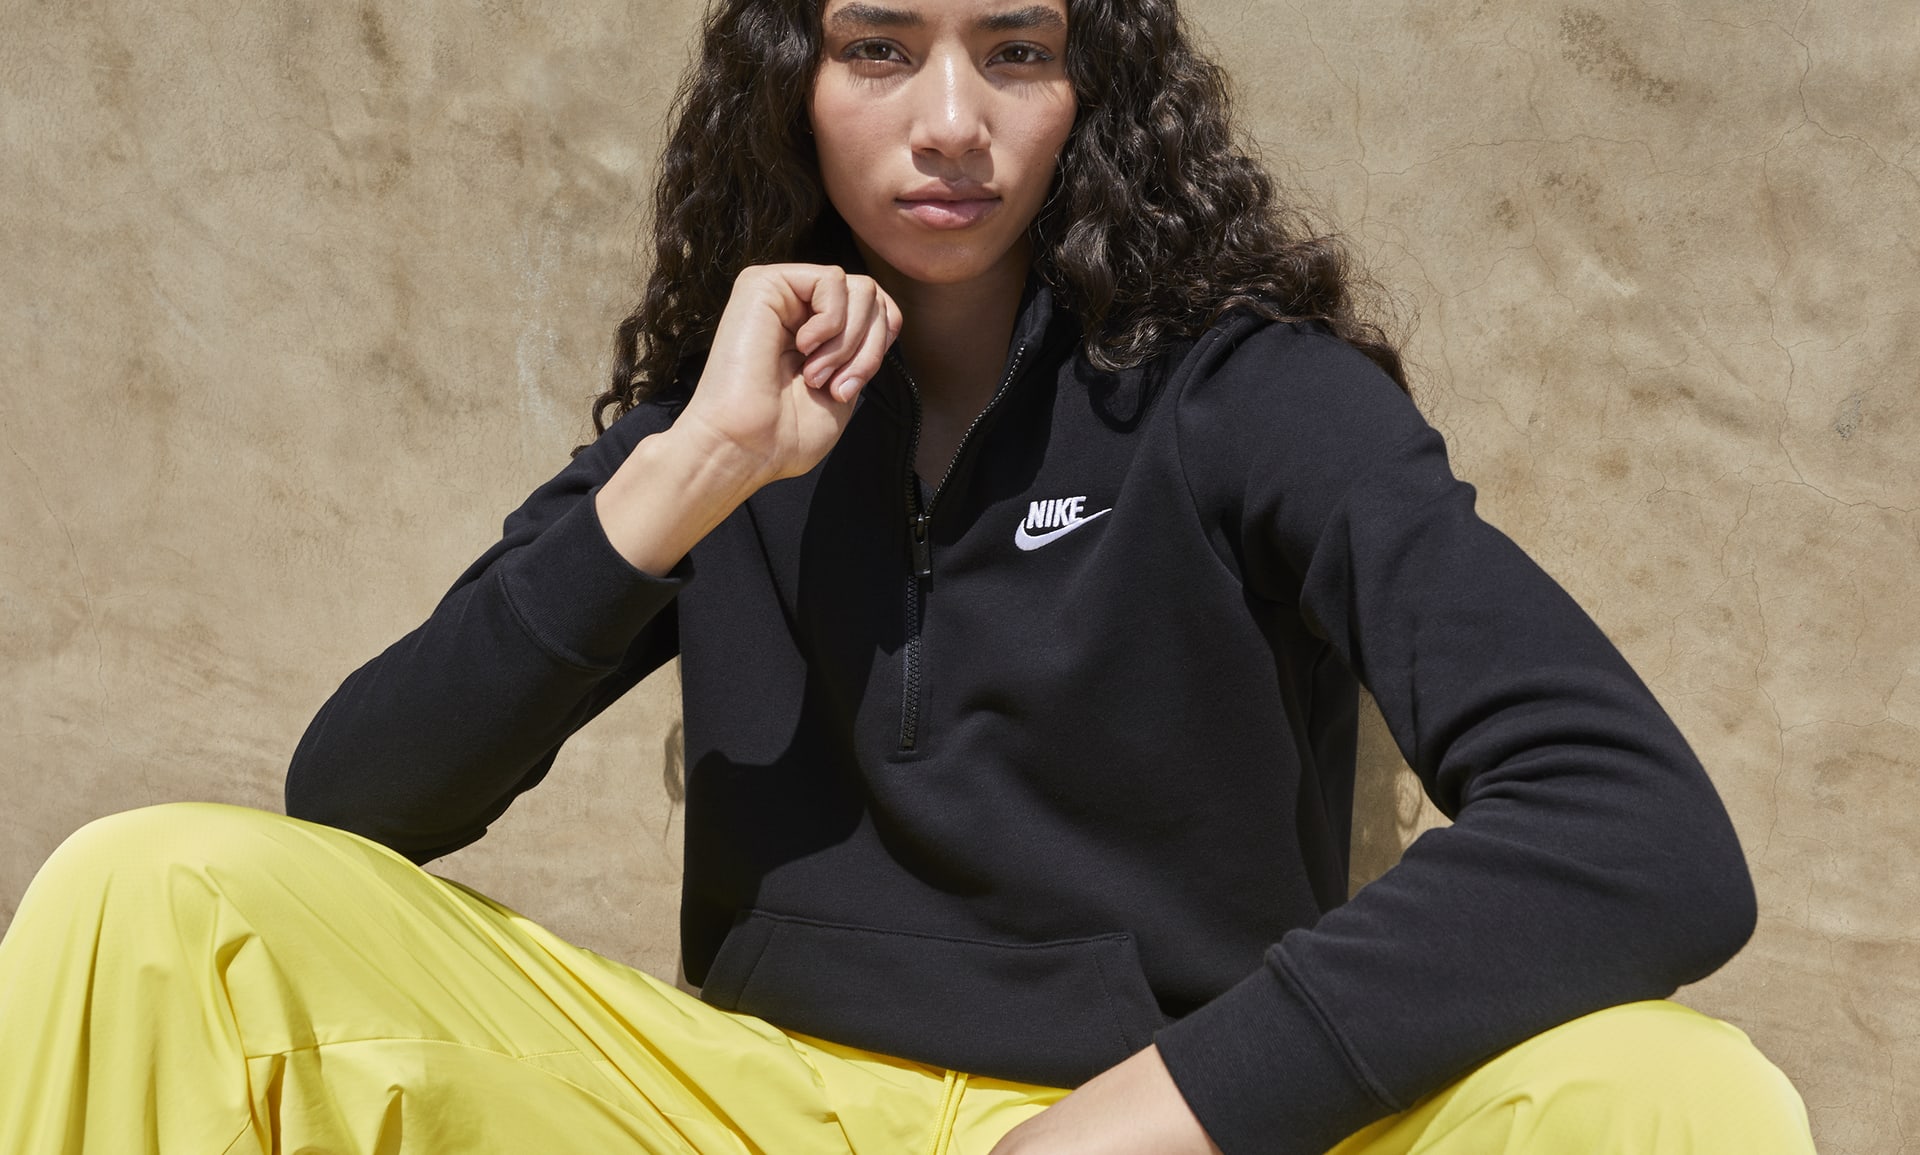 Nike Sportswear Club Fleece Women's 1/2-Zip Sweatshirt.